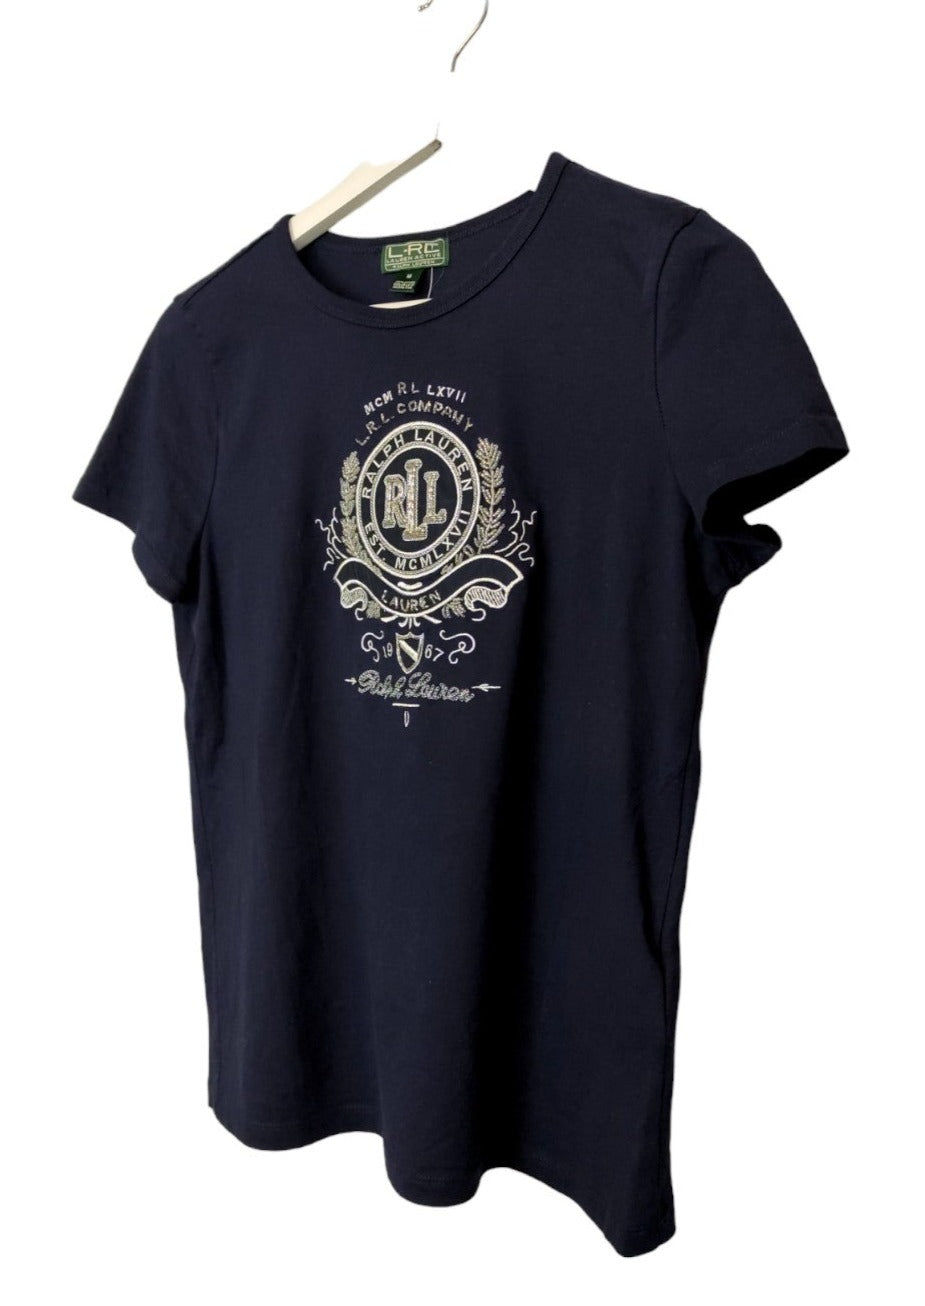 Γυναικεία, Κοντομάνικη Μπλούζα T-Shirt RALPH LAUREN ACTIVE σε Σκούρο Μπλε χρώμα (Small)